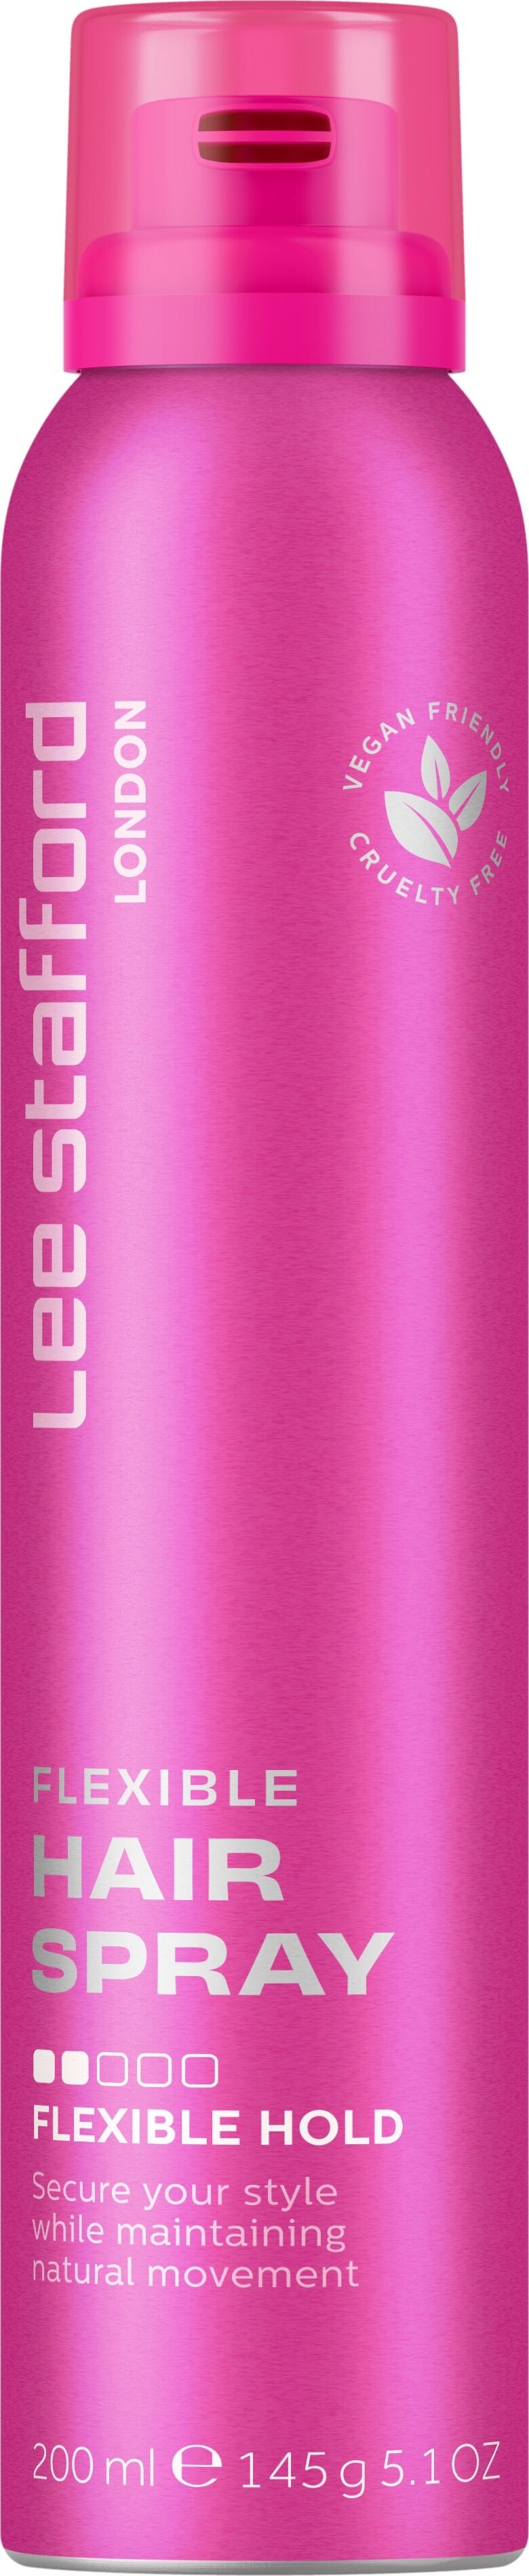 Se Lee Stafford - Flexible Hairspray - 200 Ml hos Gucca.dk